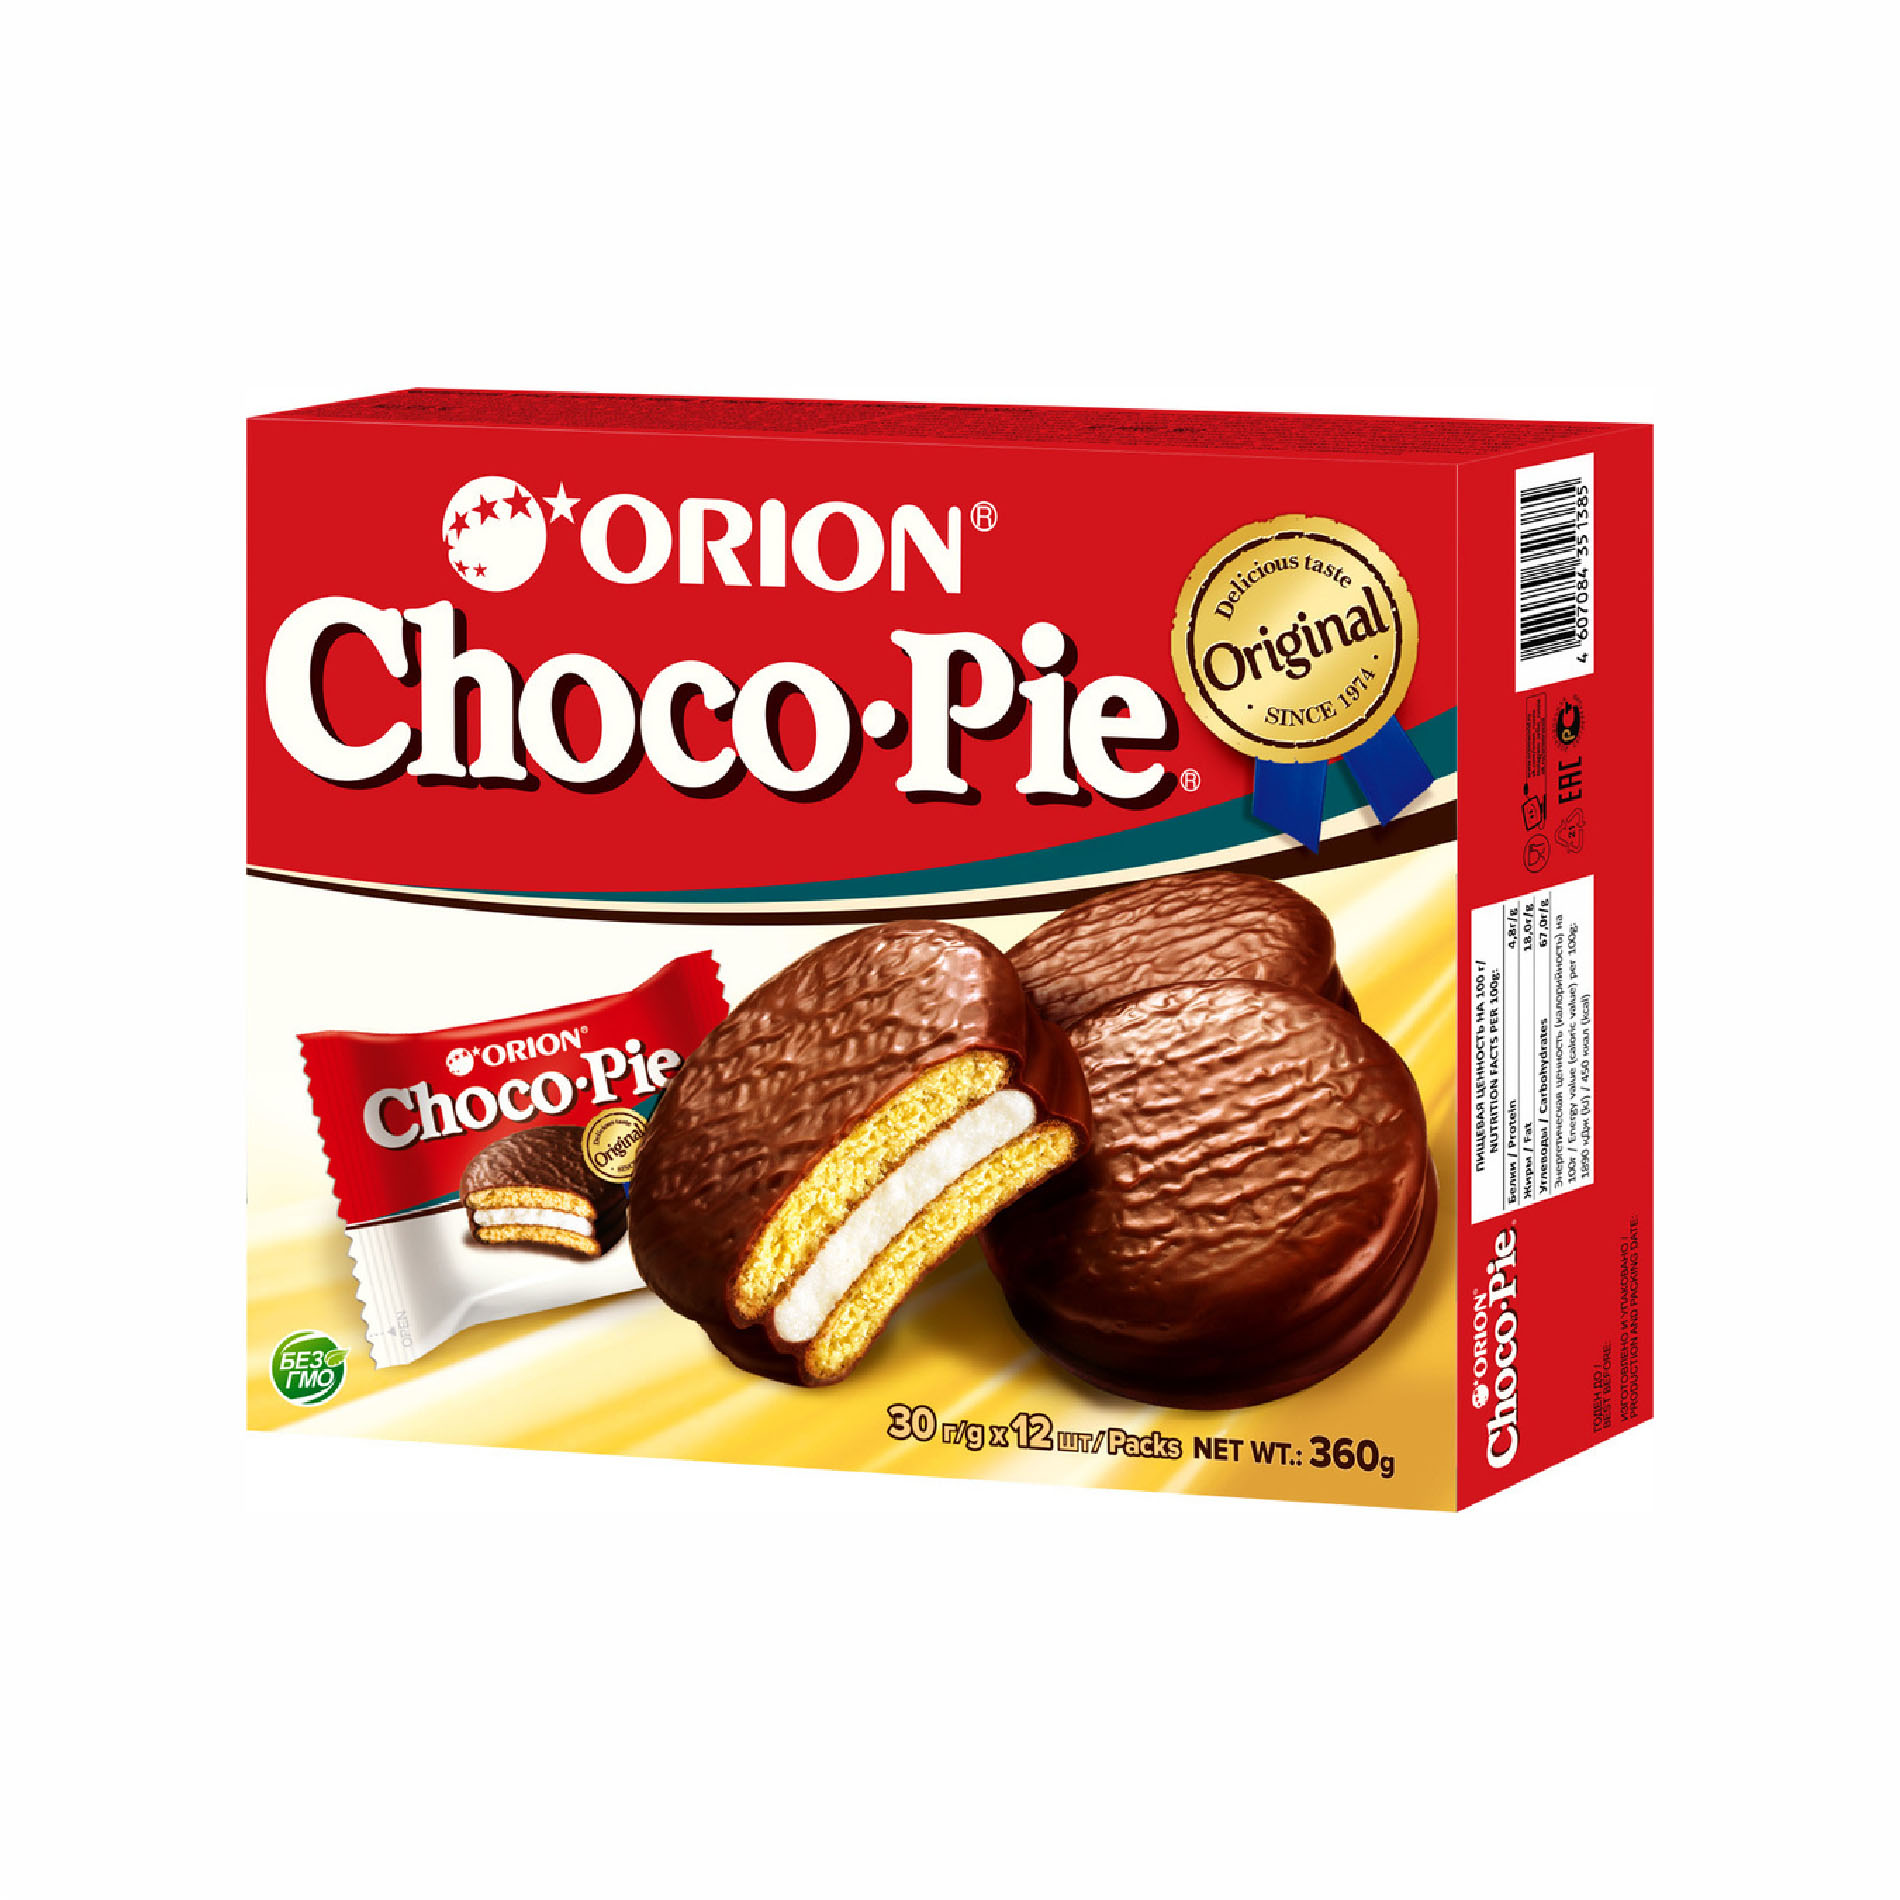 Чоко пай 12 штук. 30чоко Пай Орион. Чоко Пай оригинал. Печенье Орион.